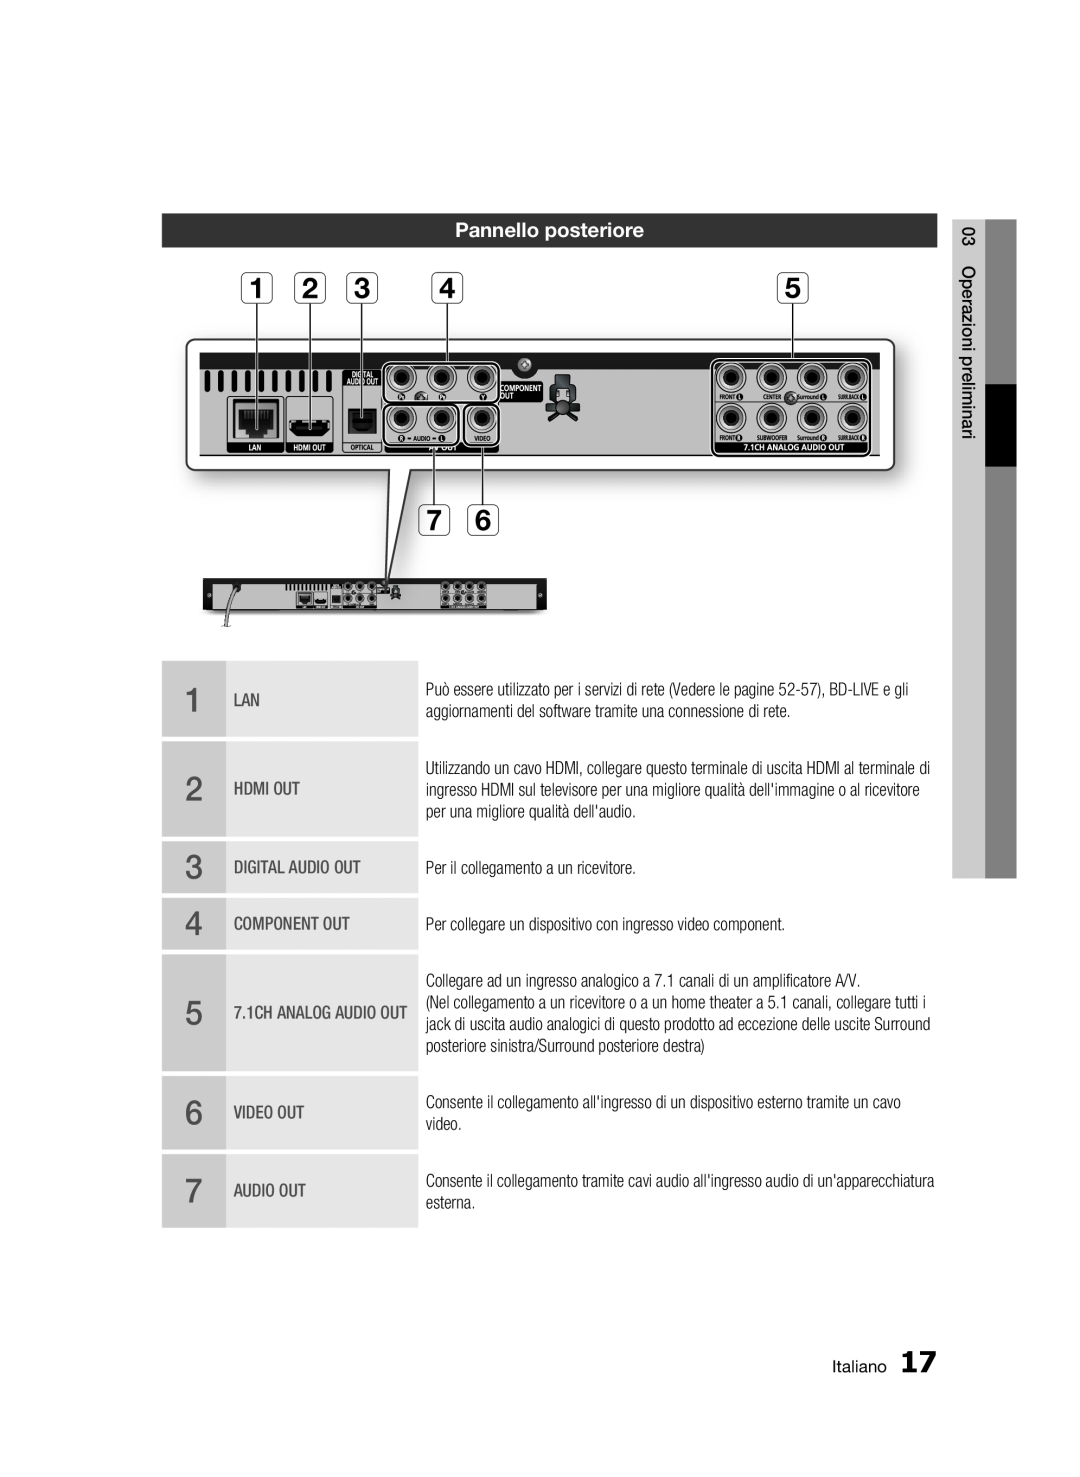 Samsung BD-C6500/XEF manual a b c d, Pannello posteriore, Operazioni preliminari, Italiano 